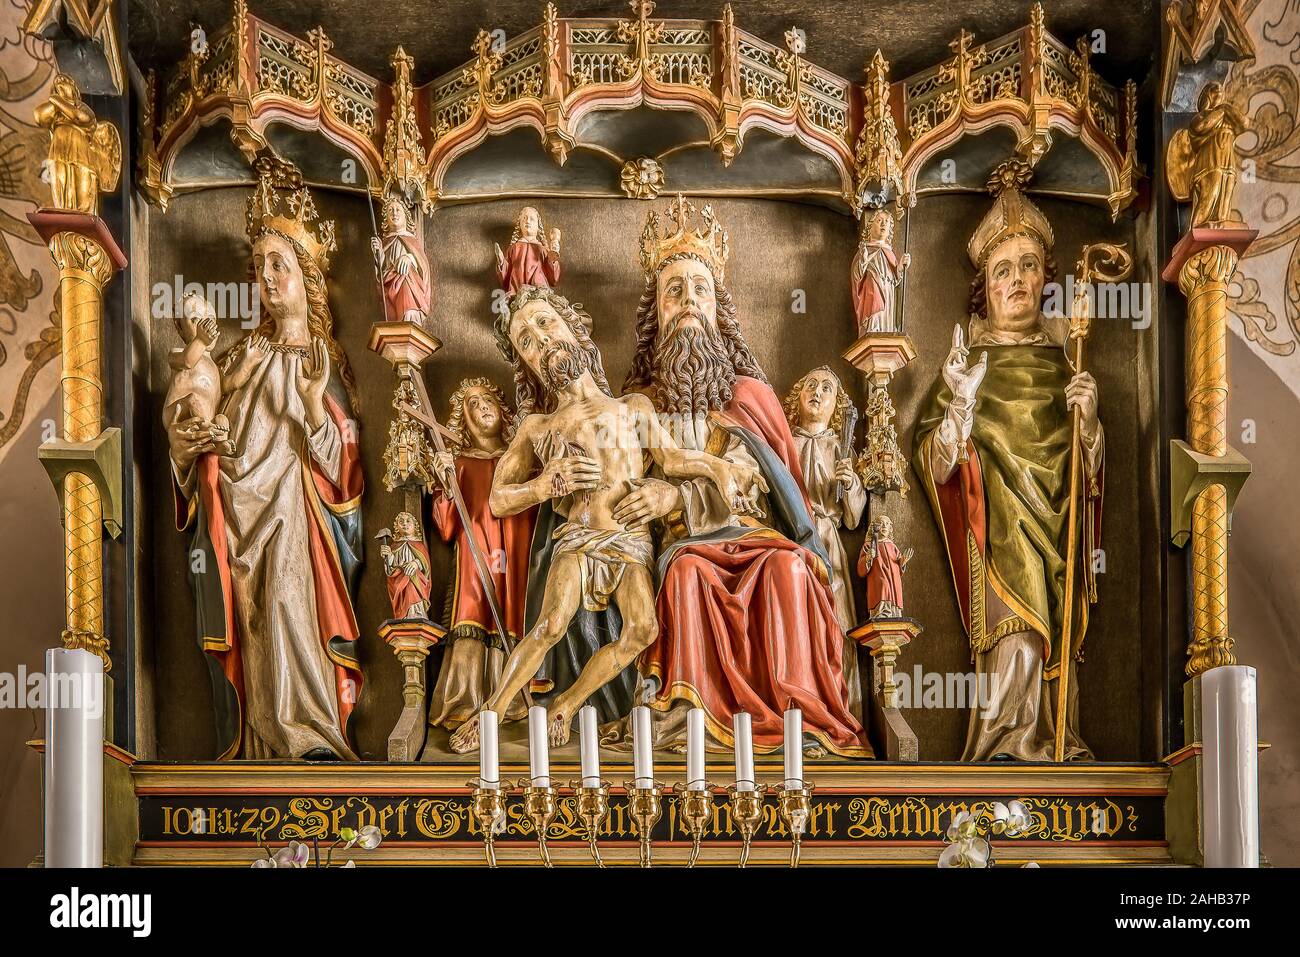 Vergoldete retabel von 1490 mit Skulpturen von Gott der Vater, Jesus und der Jungfrau Maria in Smidstrup Kirche, Dänemark, Mars 27, 2019 Stockfoto